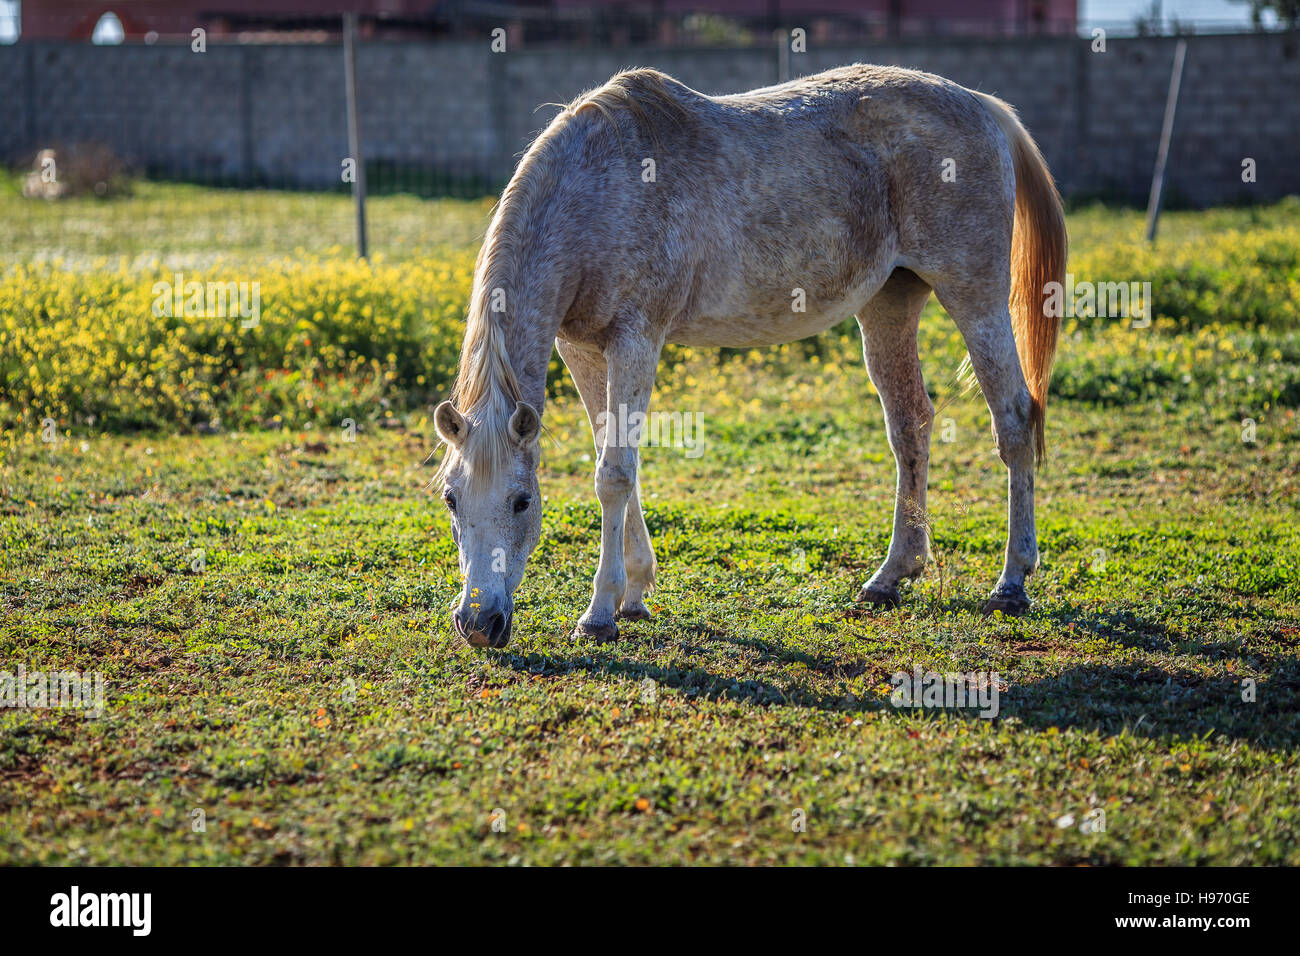 La pleine échelle photo de cheval blanc mange de l'herbe Banque D'Images